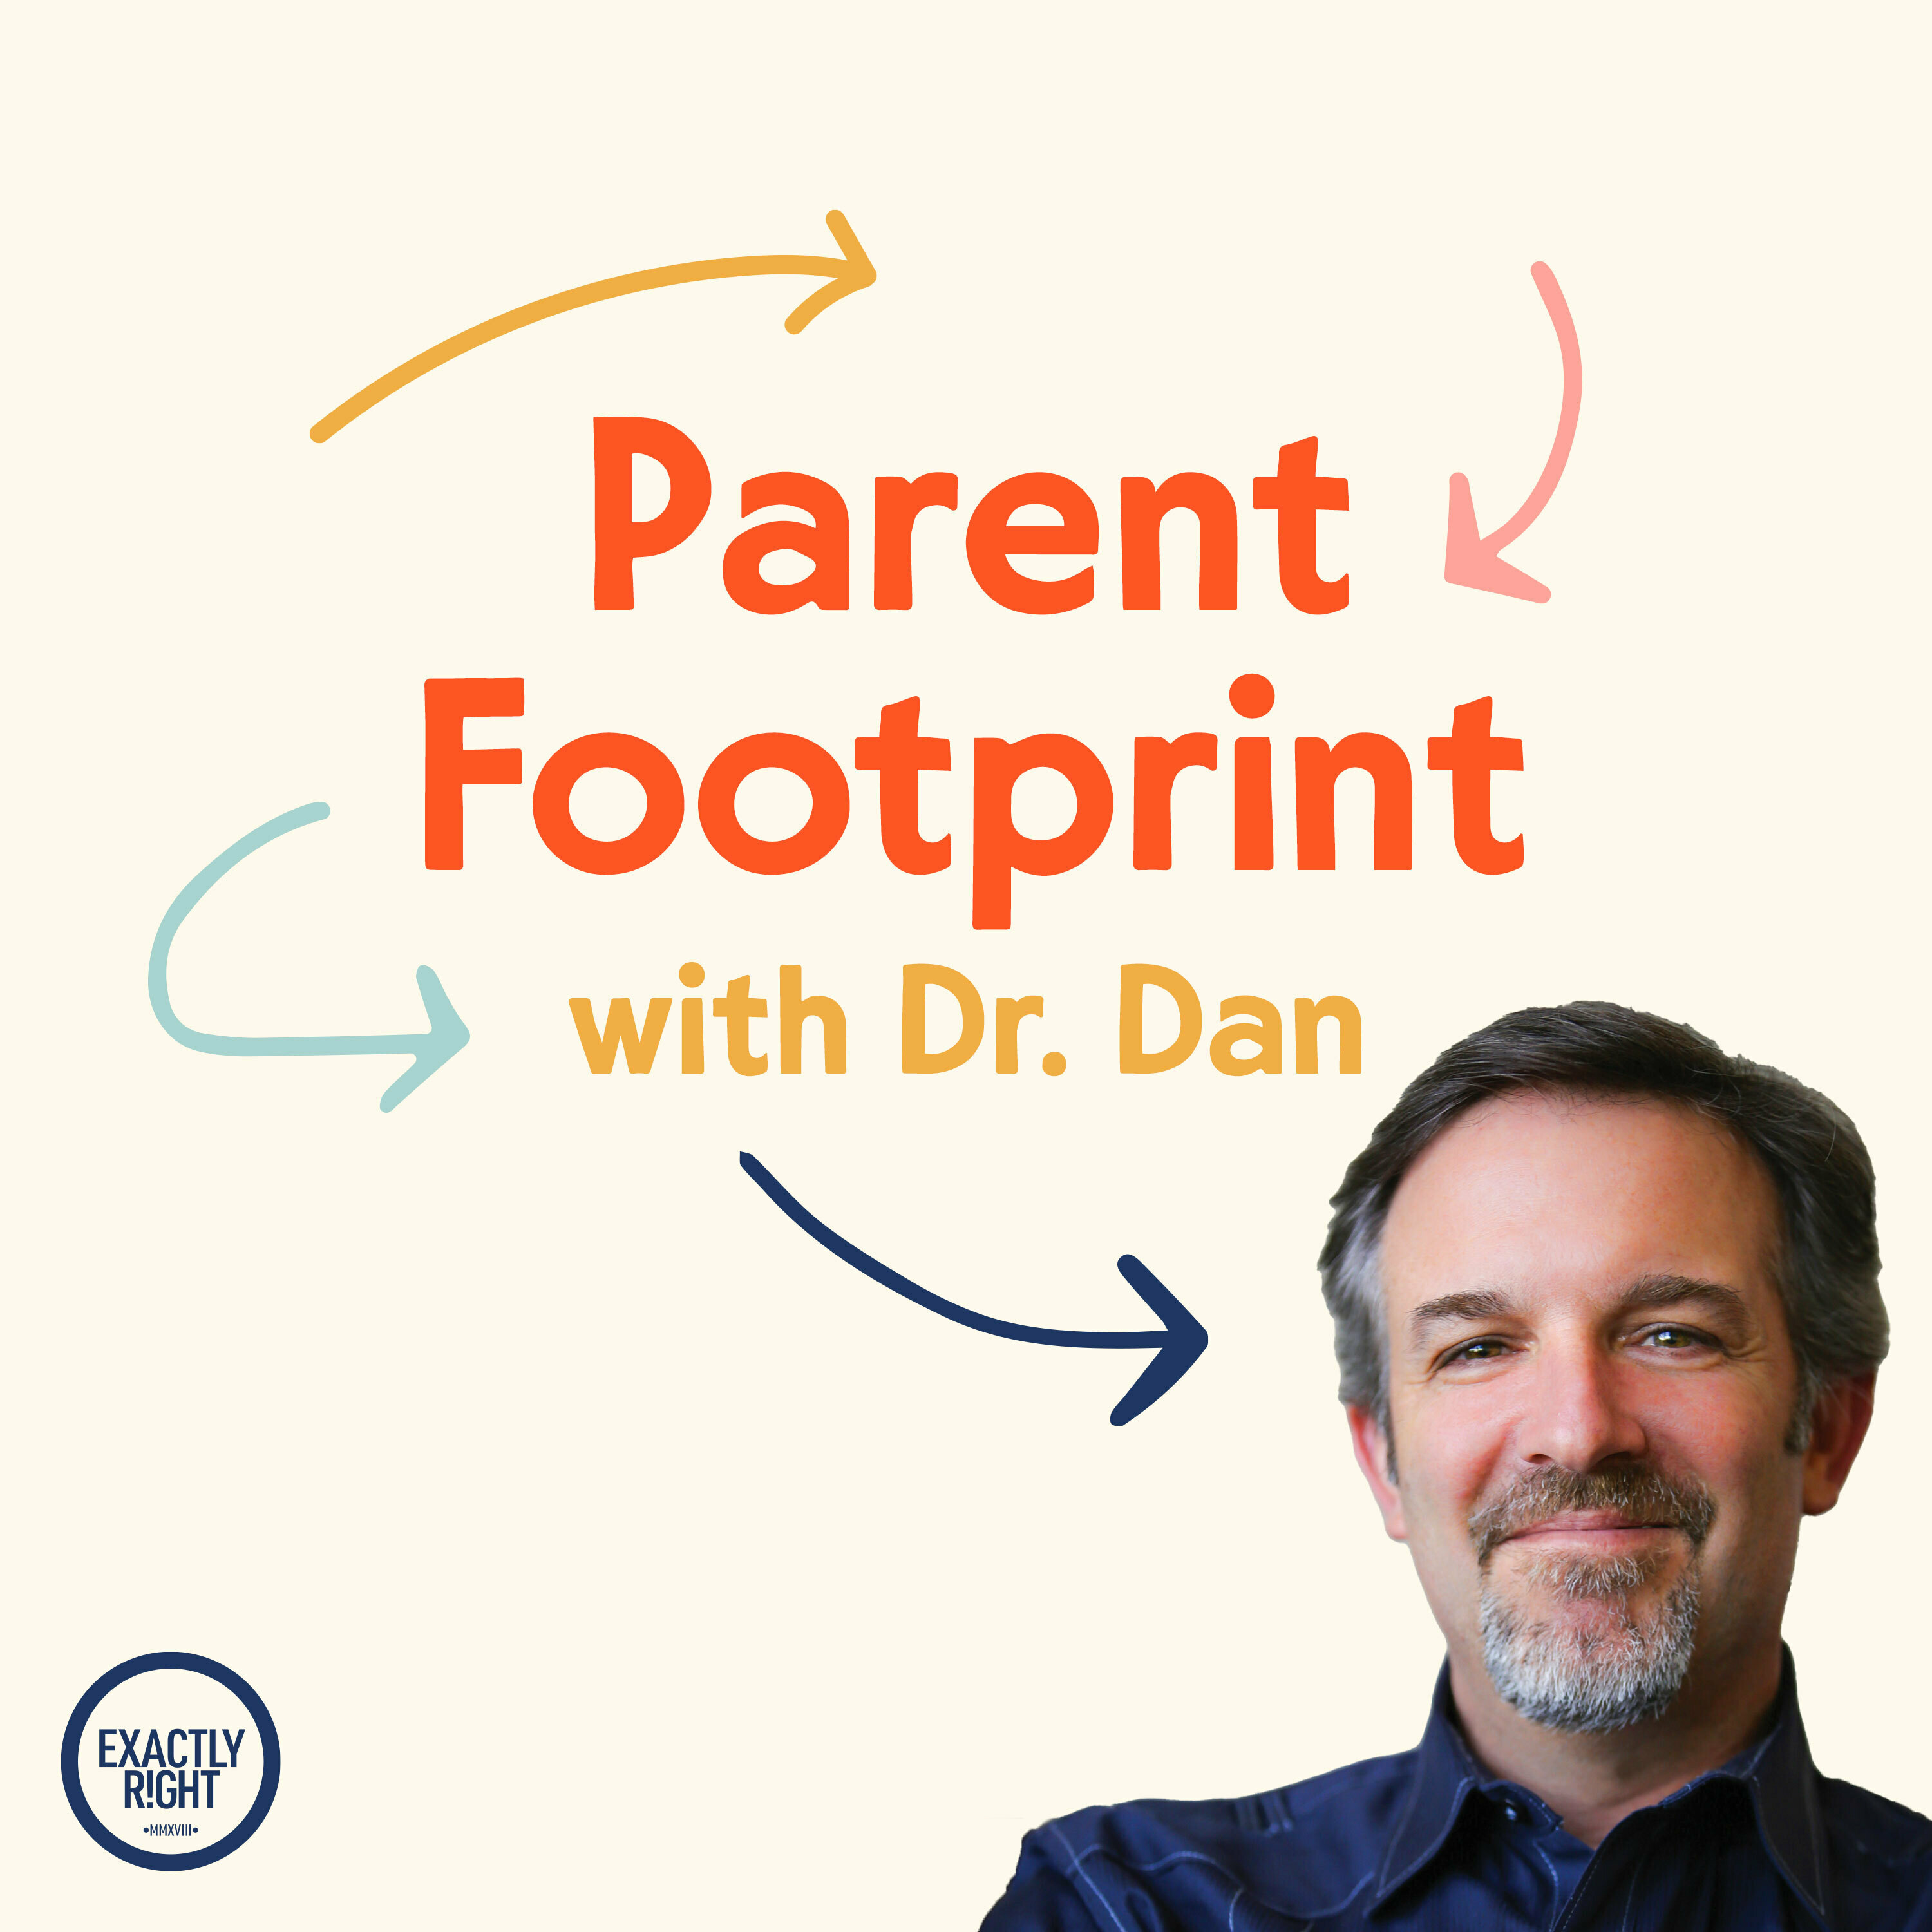 Parent Footprint with Dr. Dan